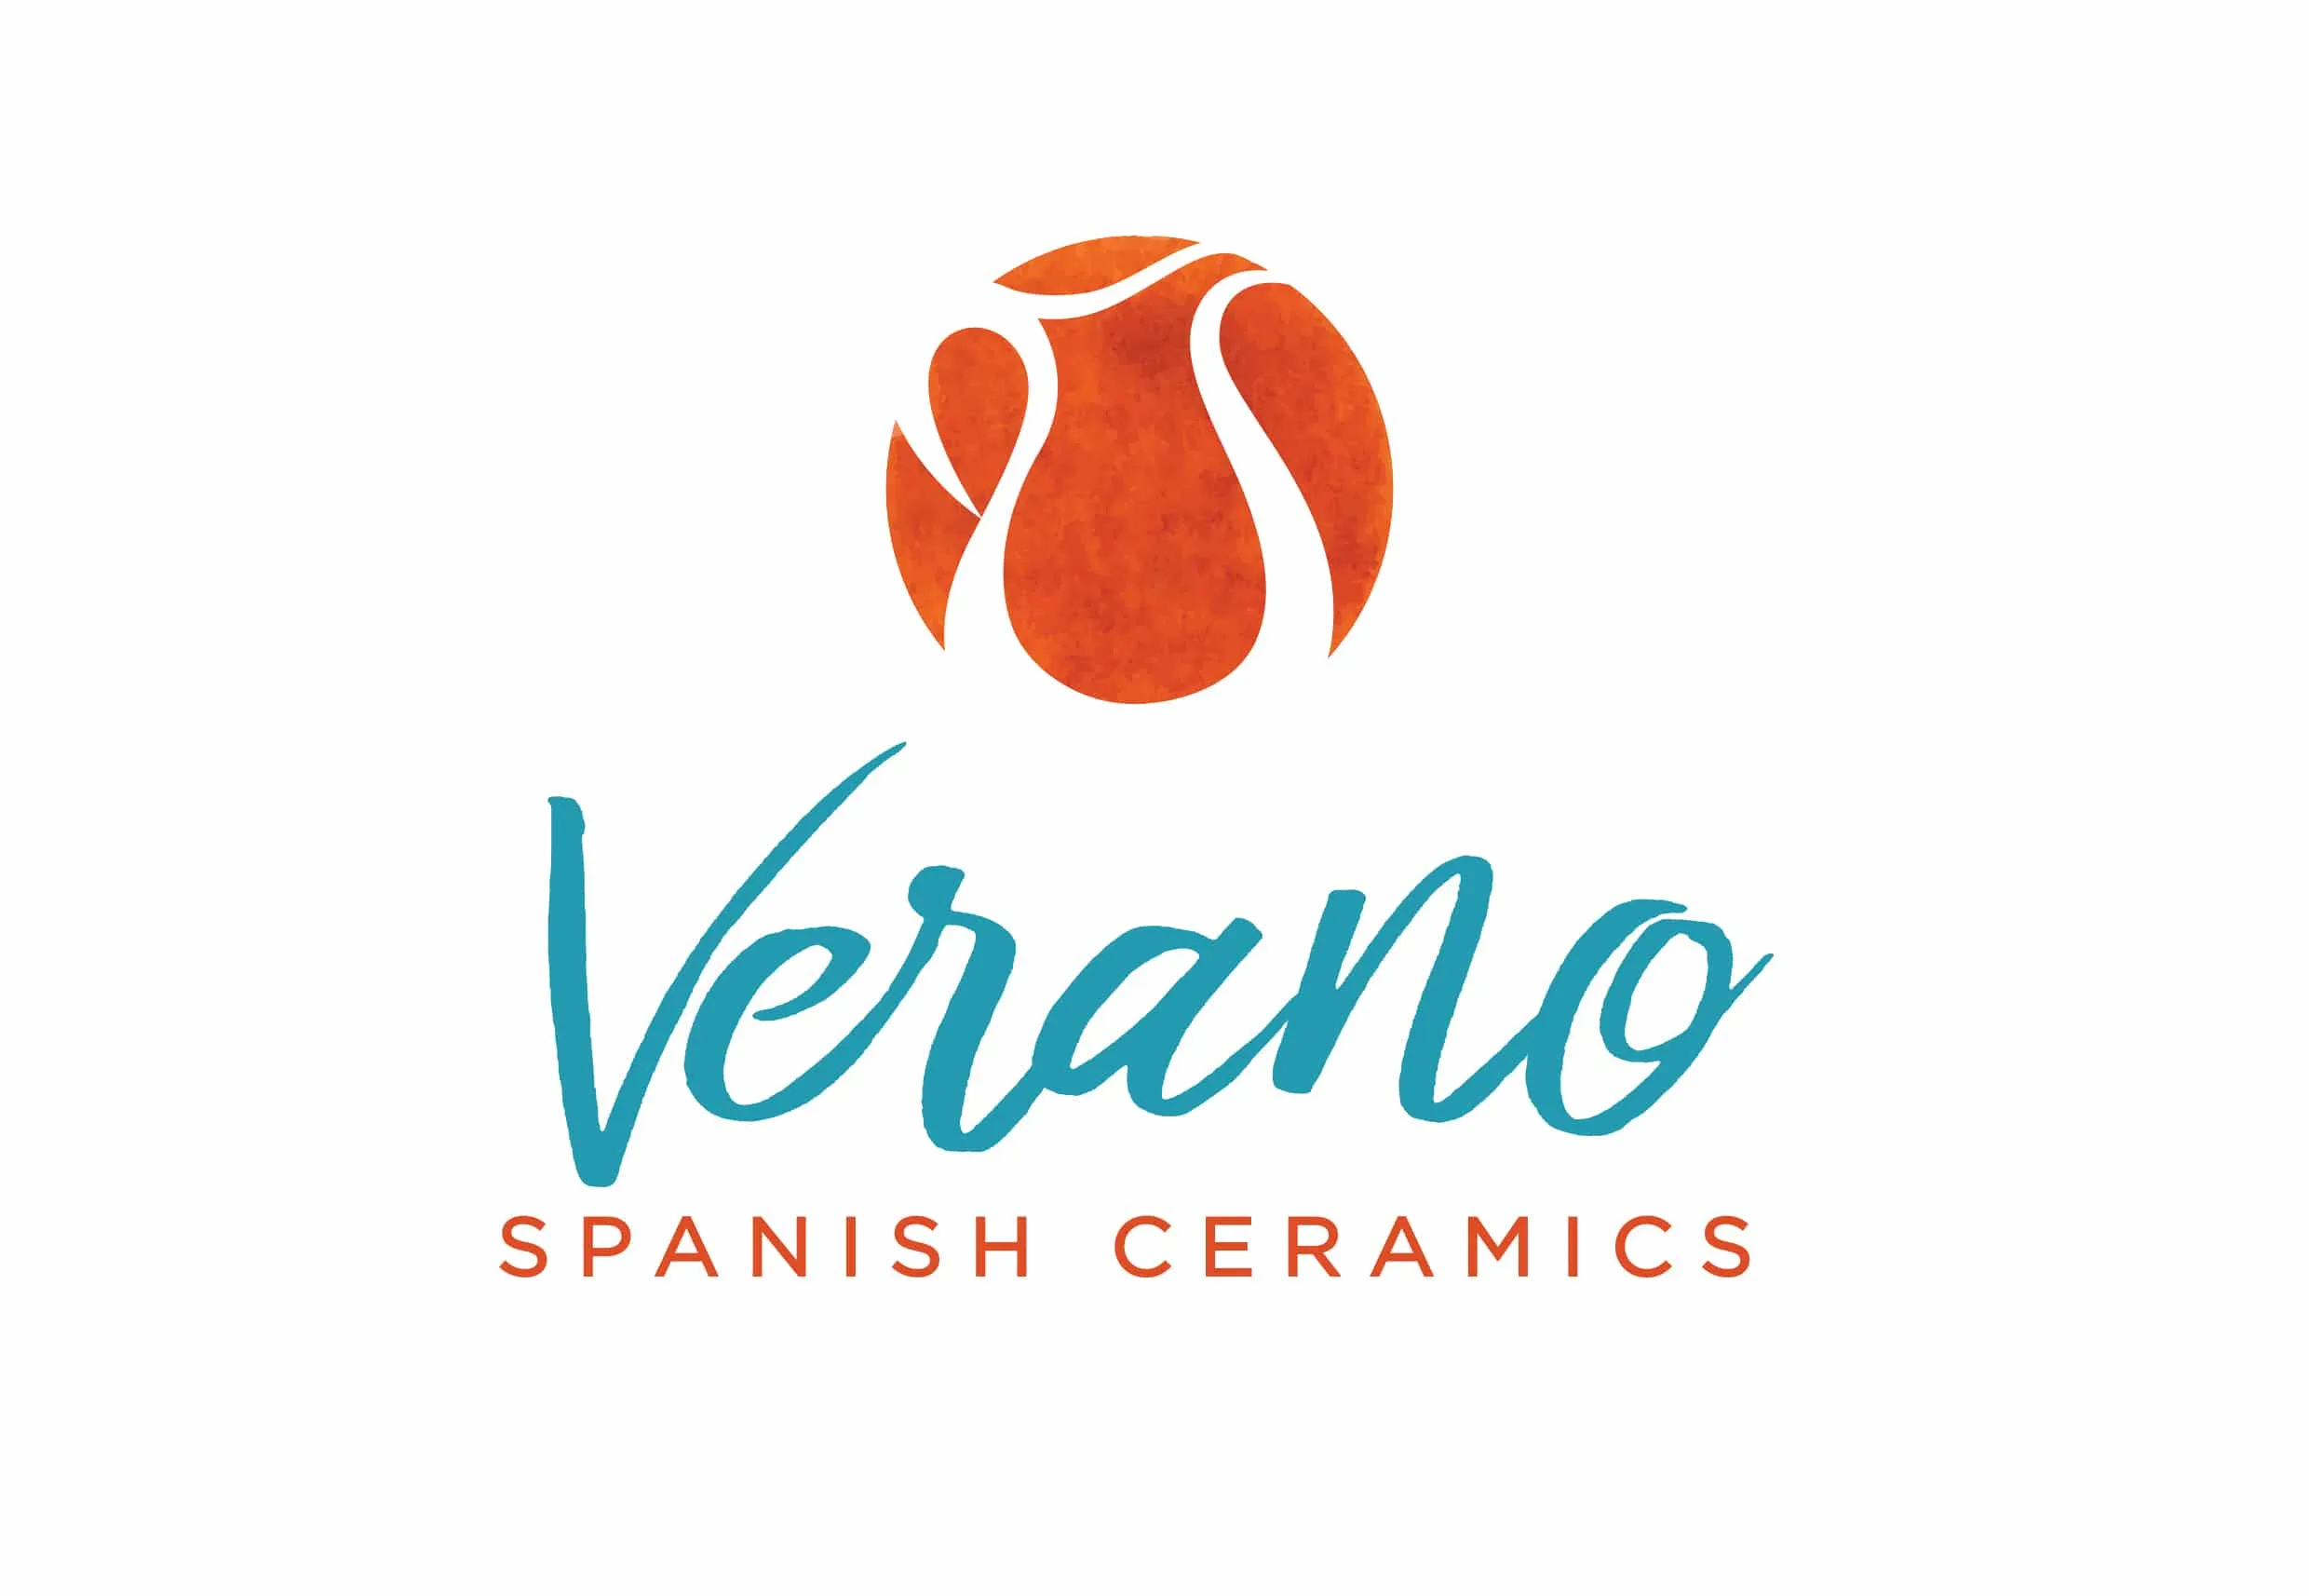 Verano Ceramics